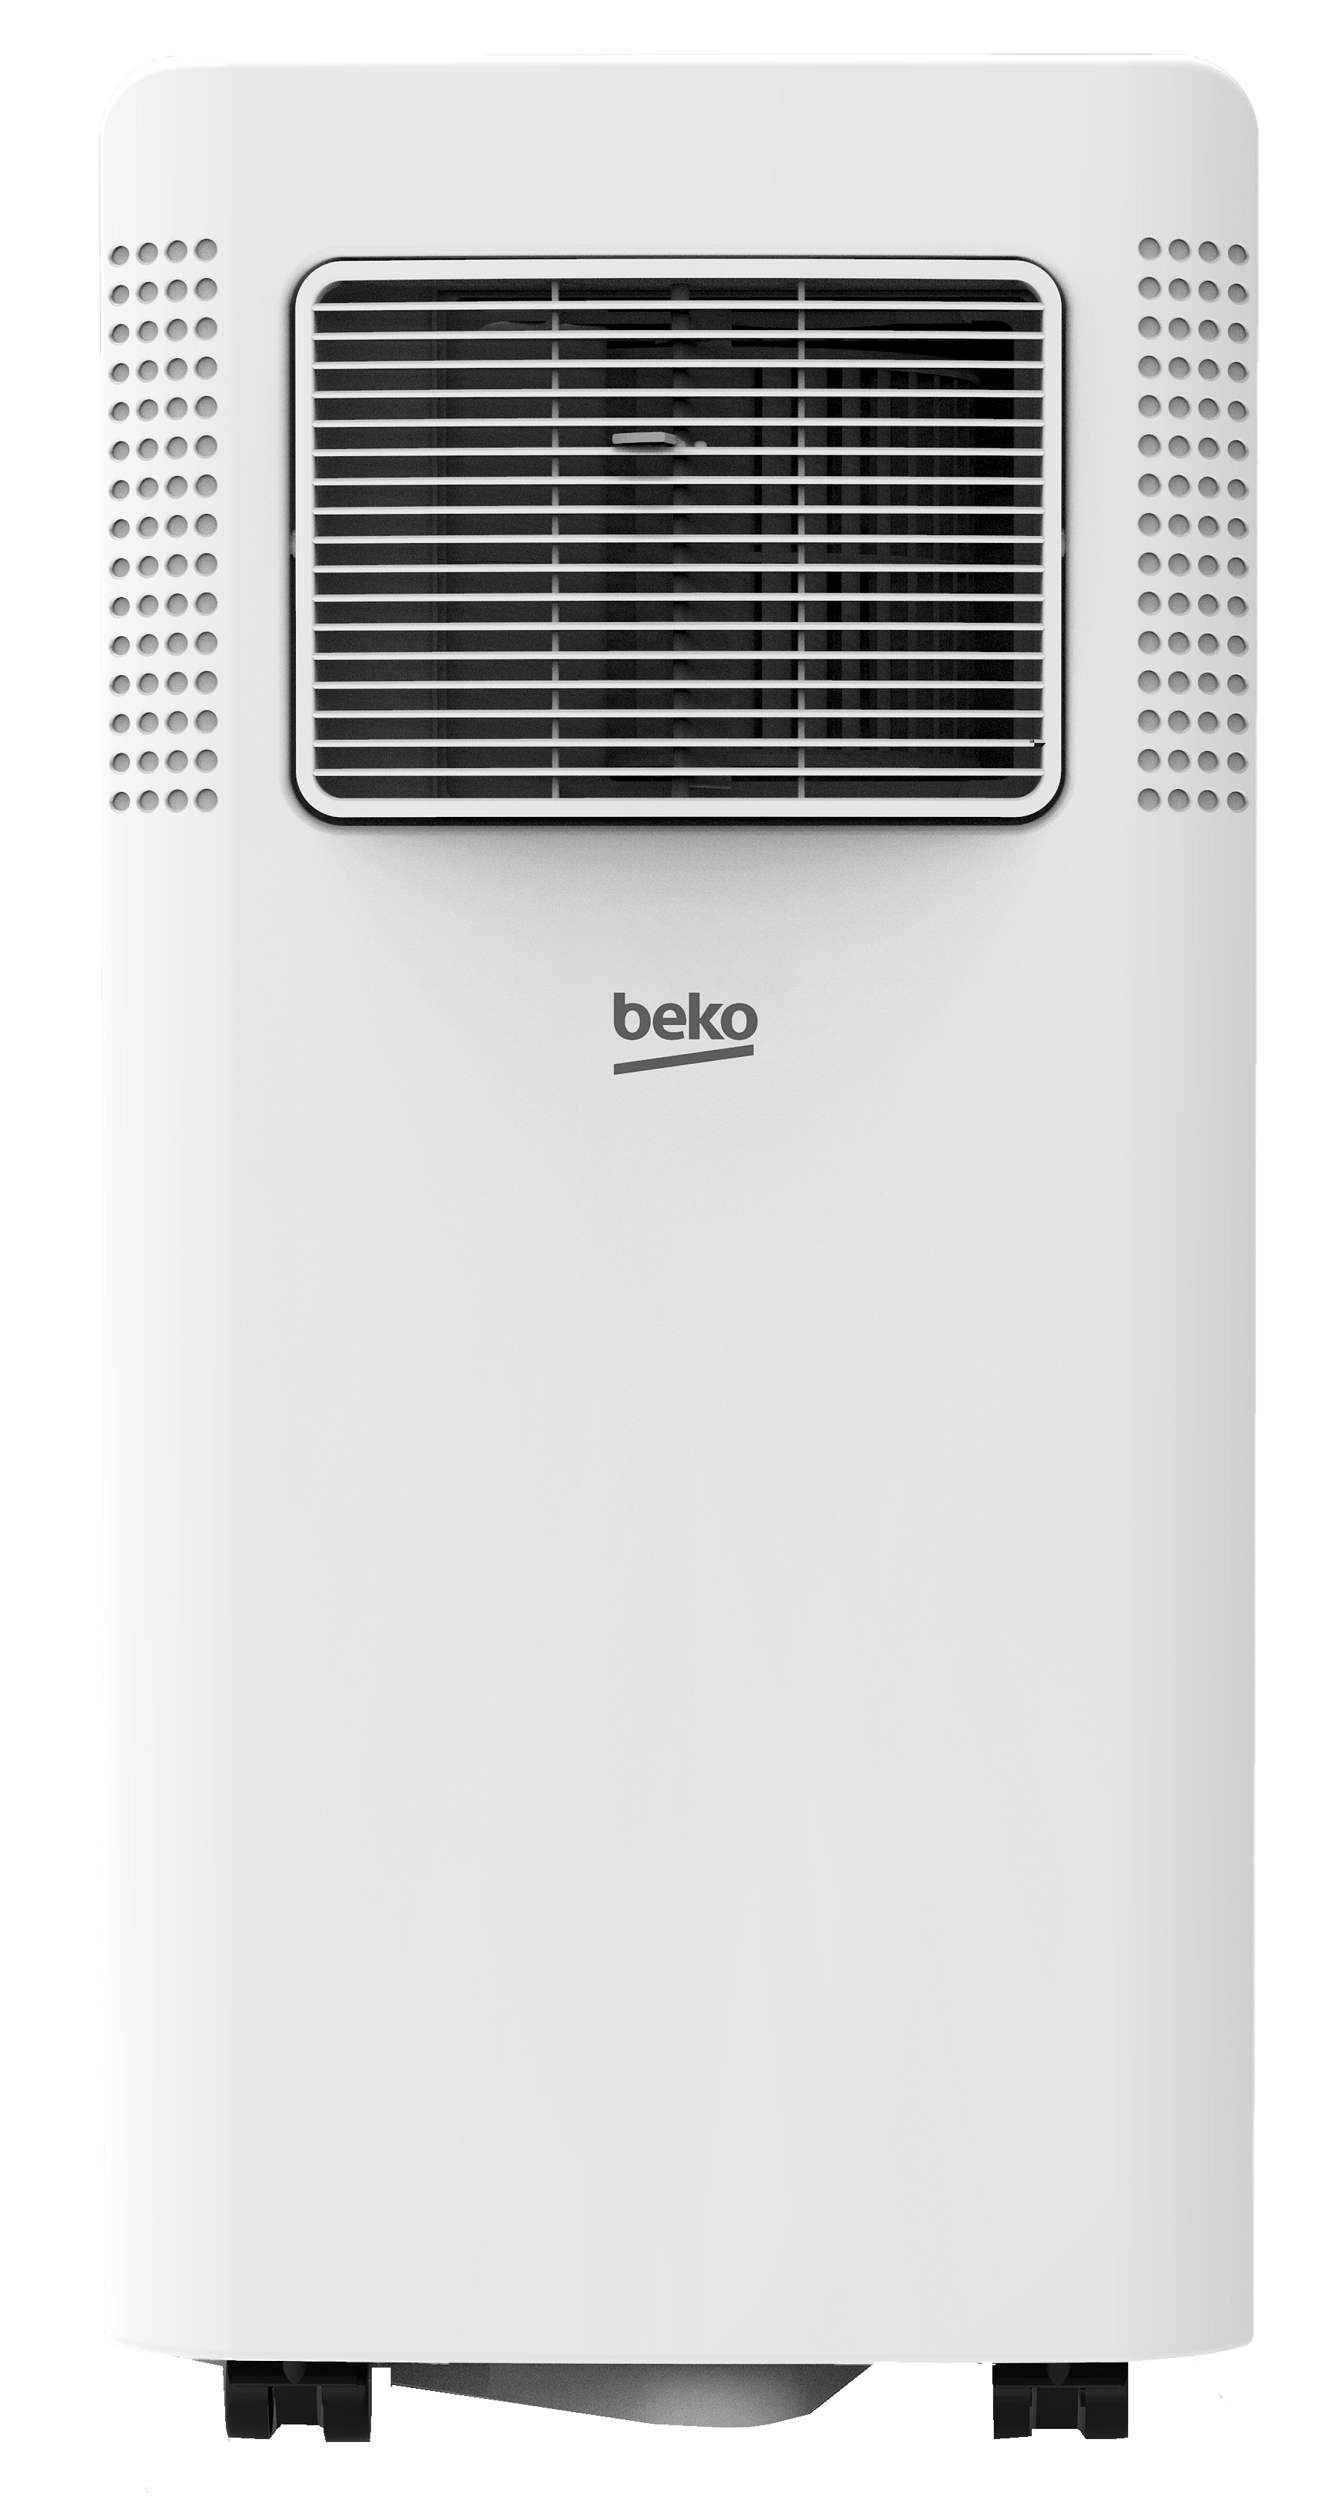 Мобильный кондиционер Beko BP207C в интернет-магазине, главное фото